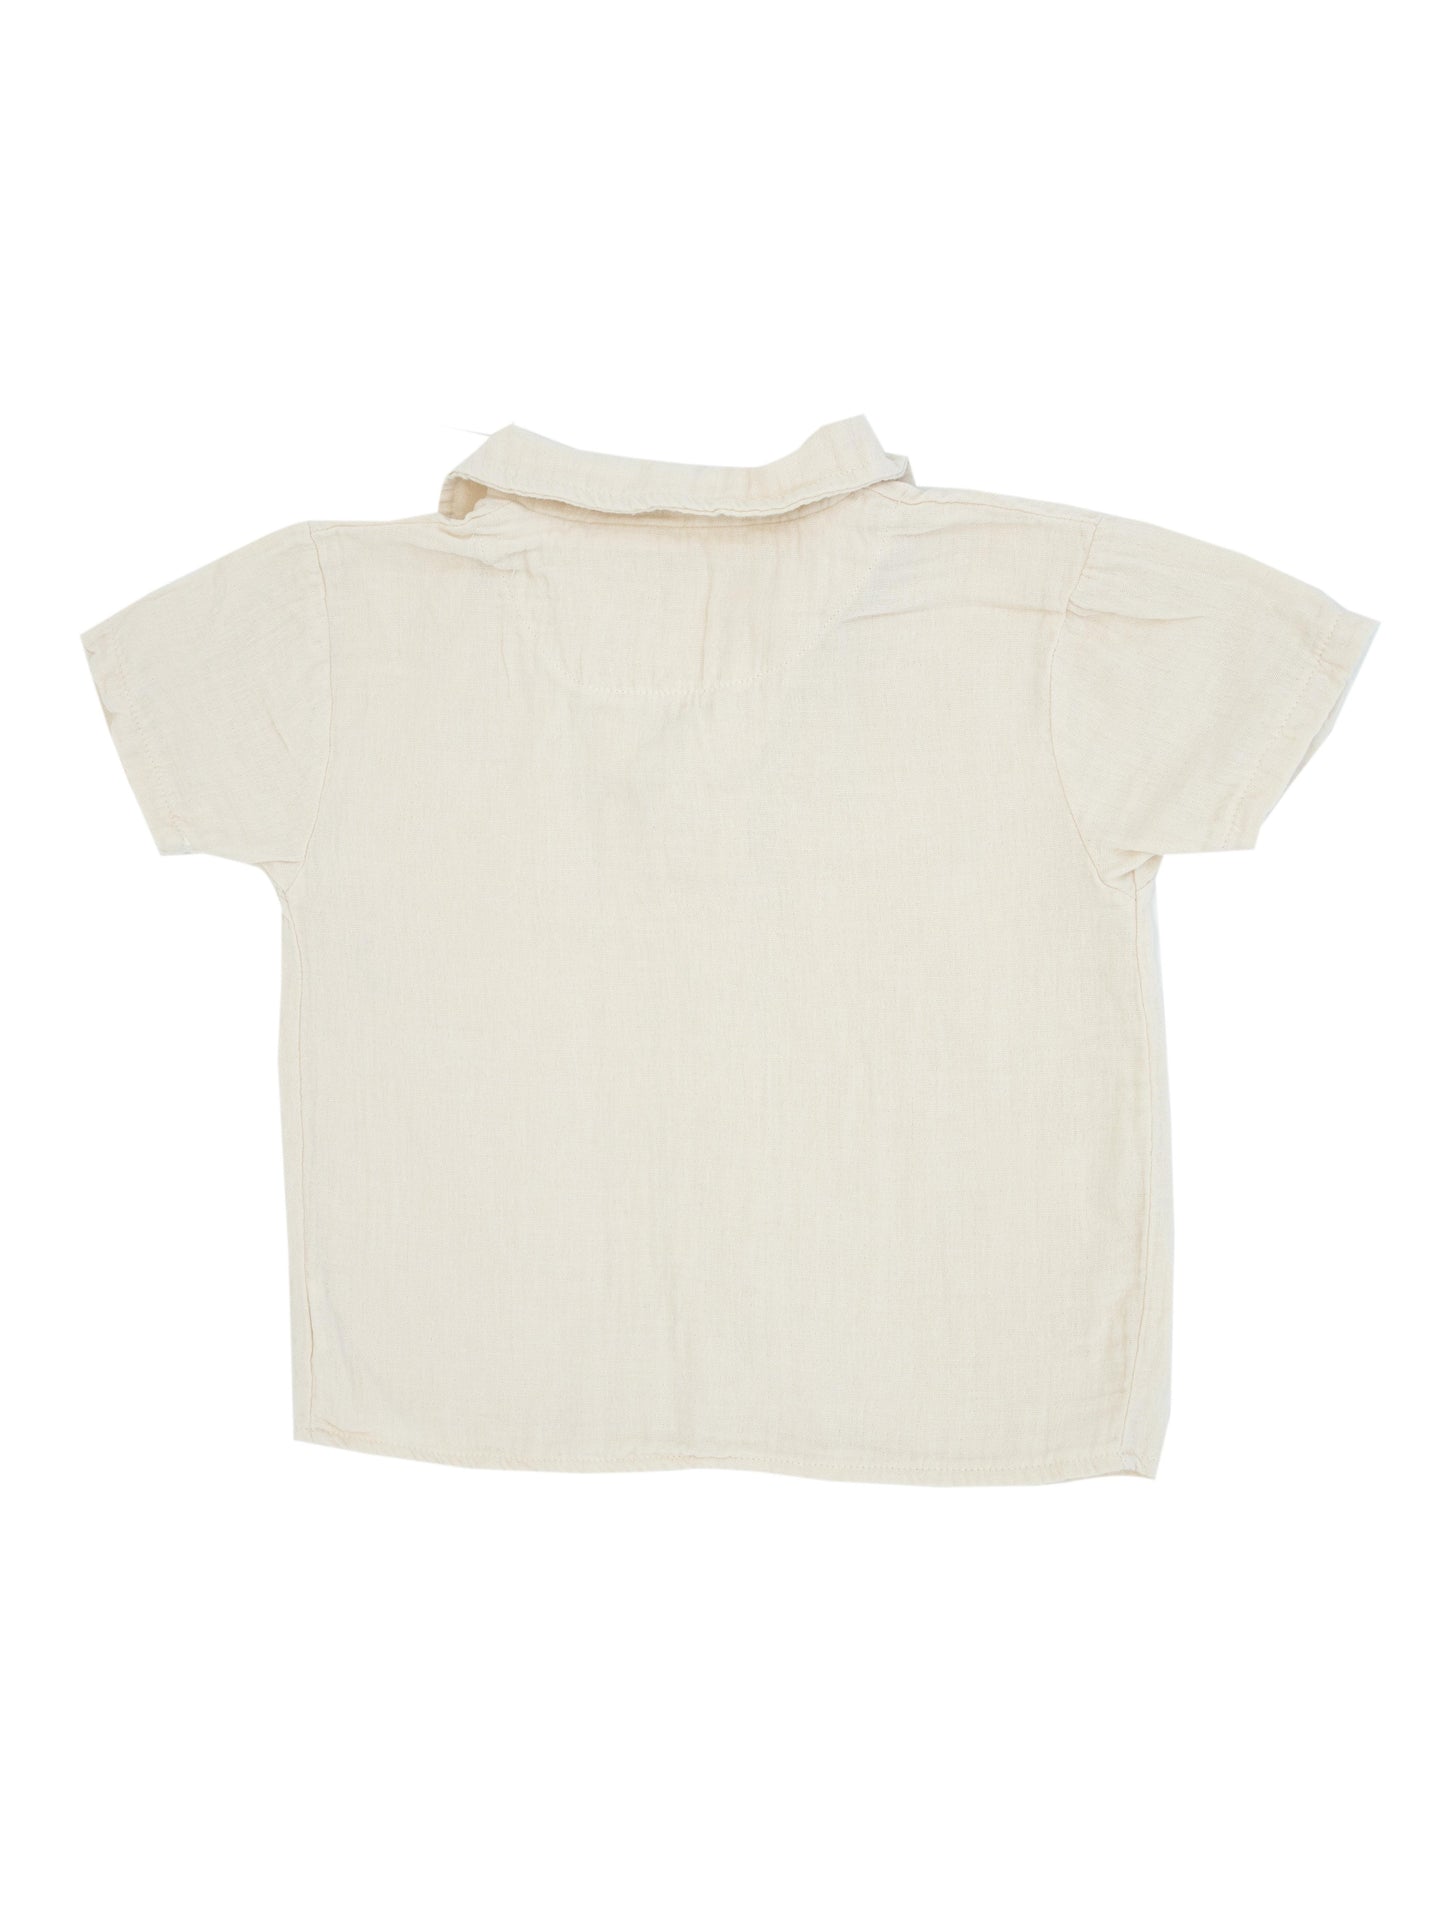 Подростковая рубашка из 100% органического муслина с короткими рукавами и пуговицами спереди